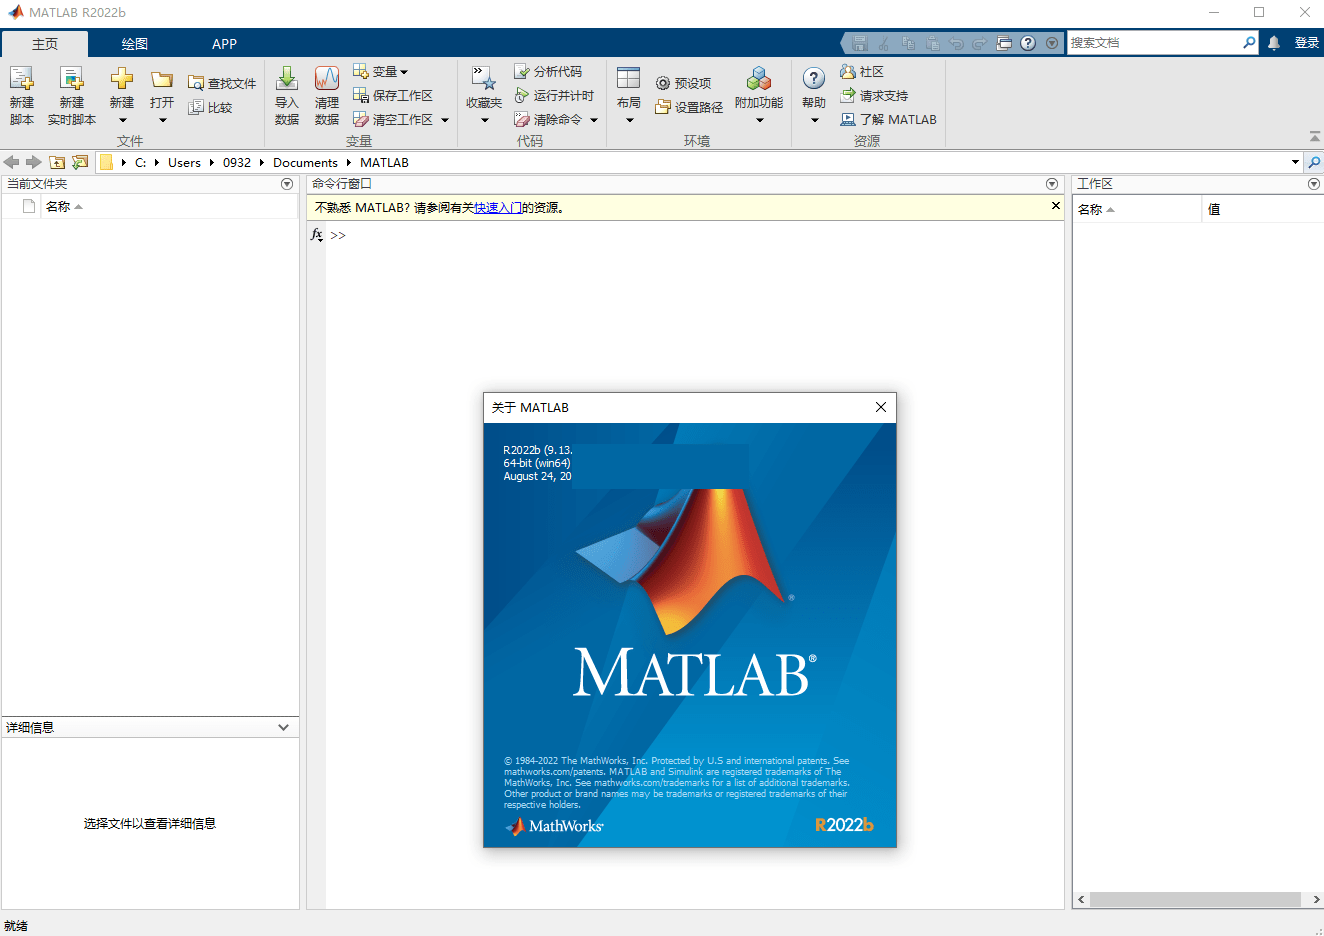 恐怖之家2苹果下载破解版:Mathworks Matlab R2022b for Mac v9.13.0 中文破解版下载商业数学软件安装